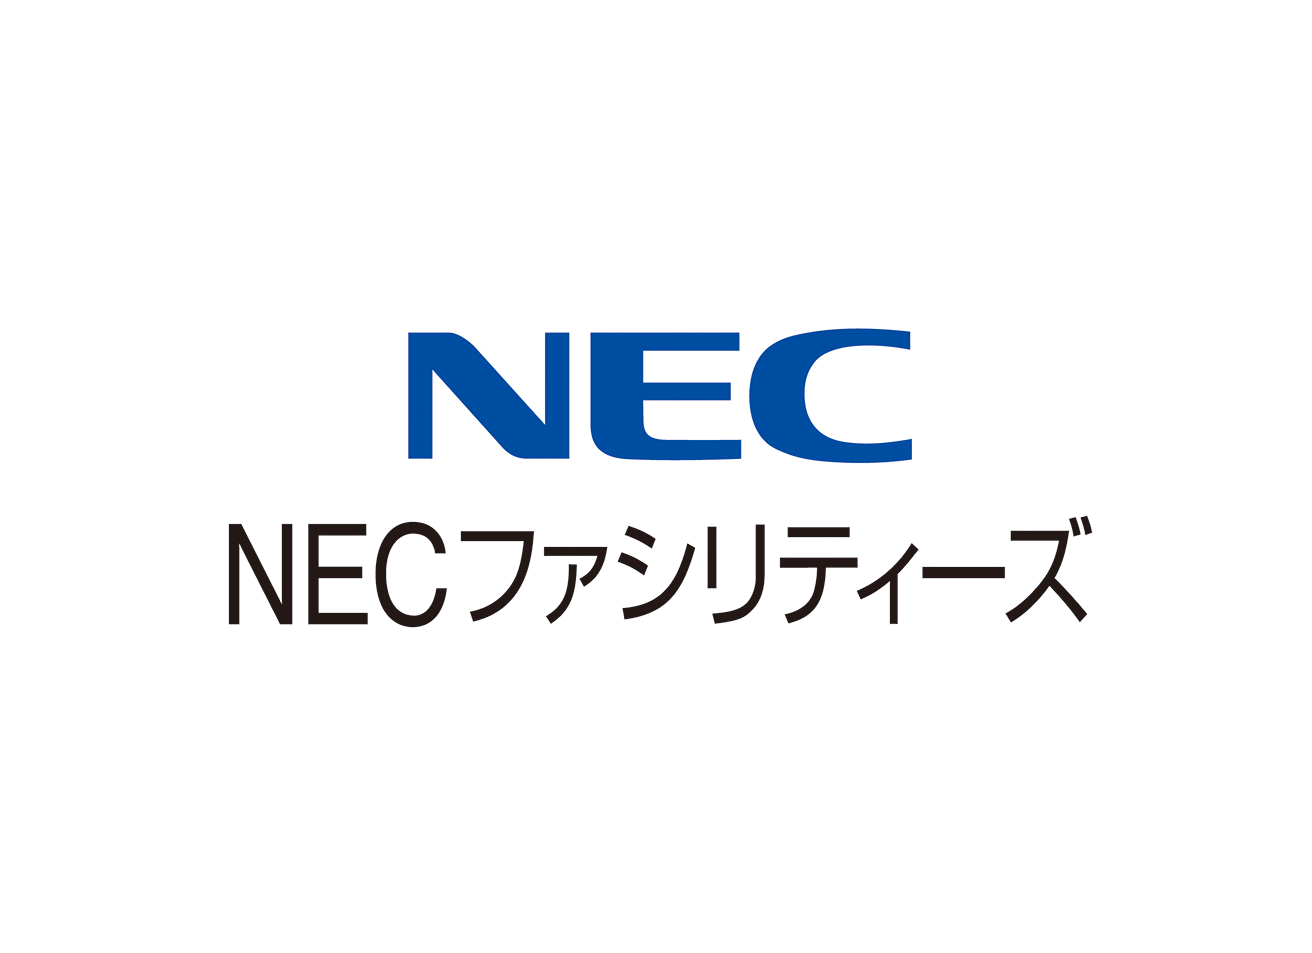 NECファシリティーズ株式会社